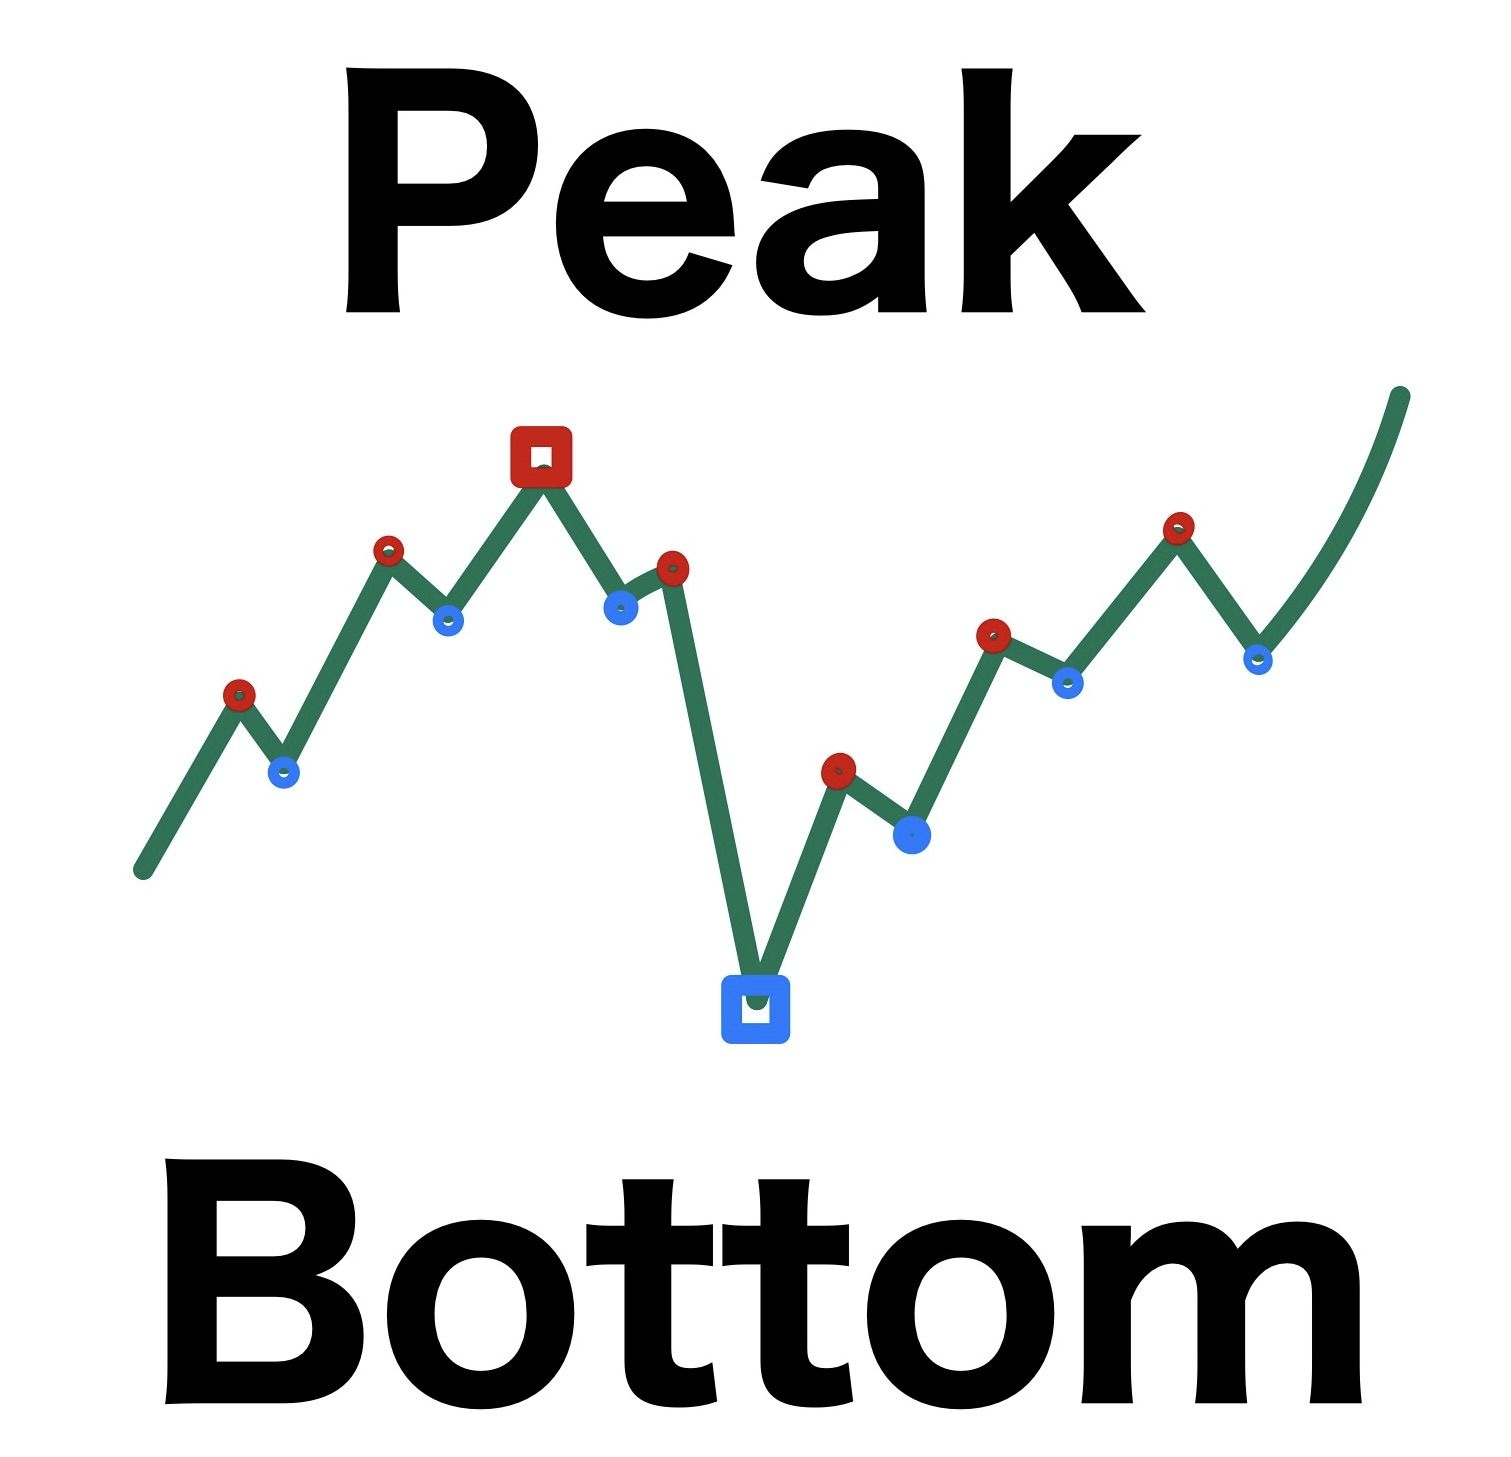 ピークとボトムを表示します。左右のn本のバーと比較して最高値,最安値を表示。ピークとボトムが交互になるようにすることも可能。